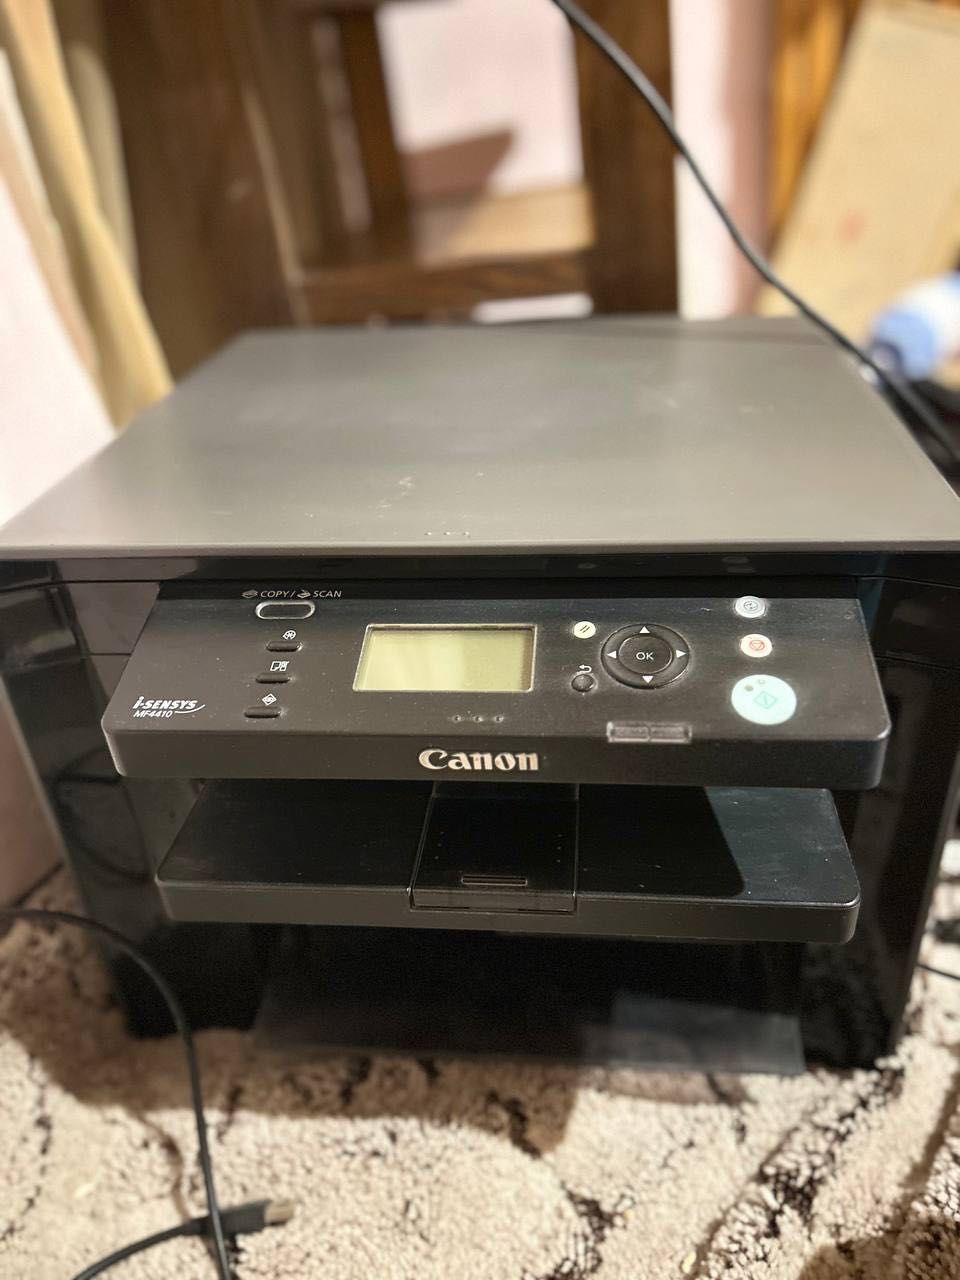 prodam printer canon 4410